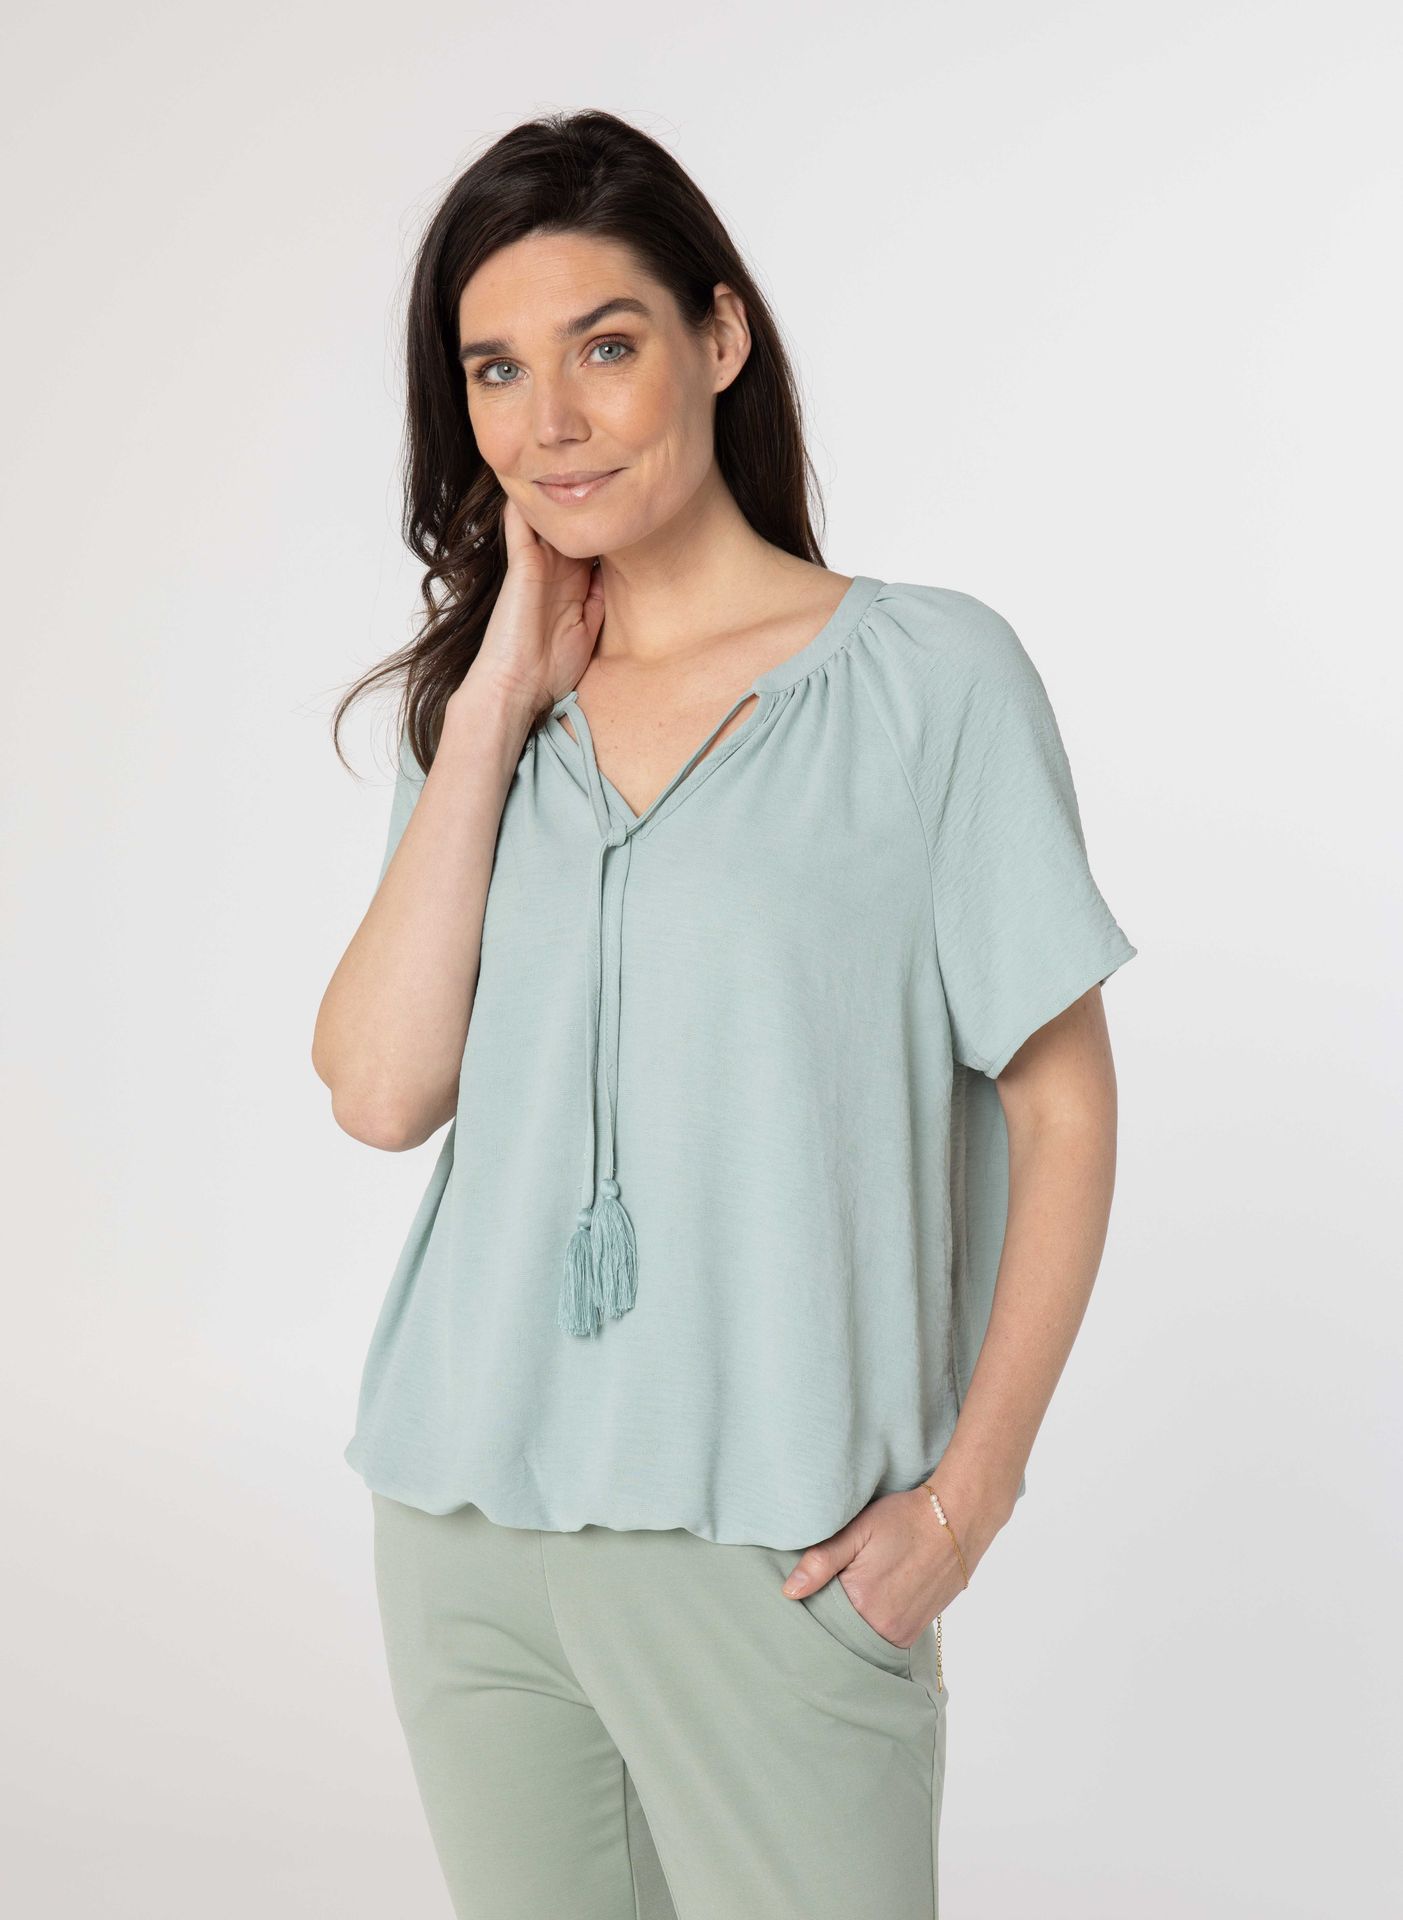 Norah Lichtgroene blouse light green 213965-515